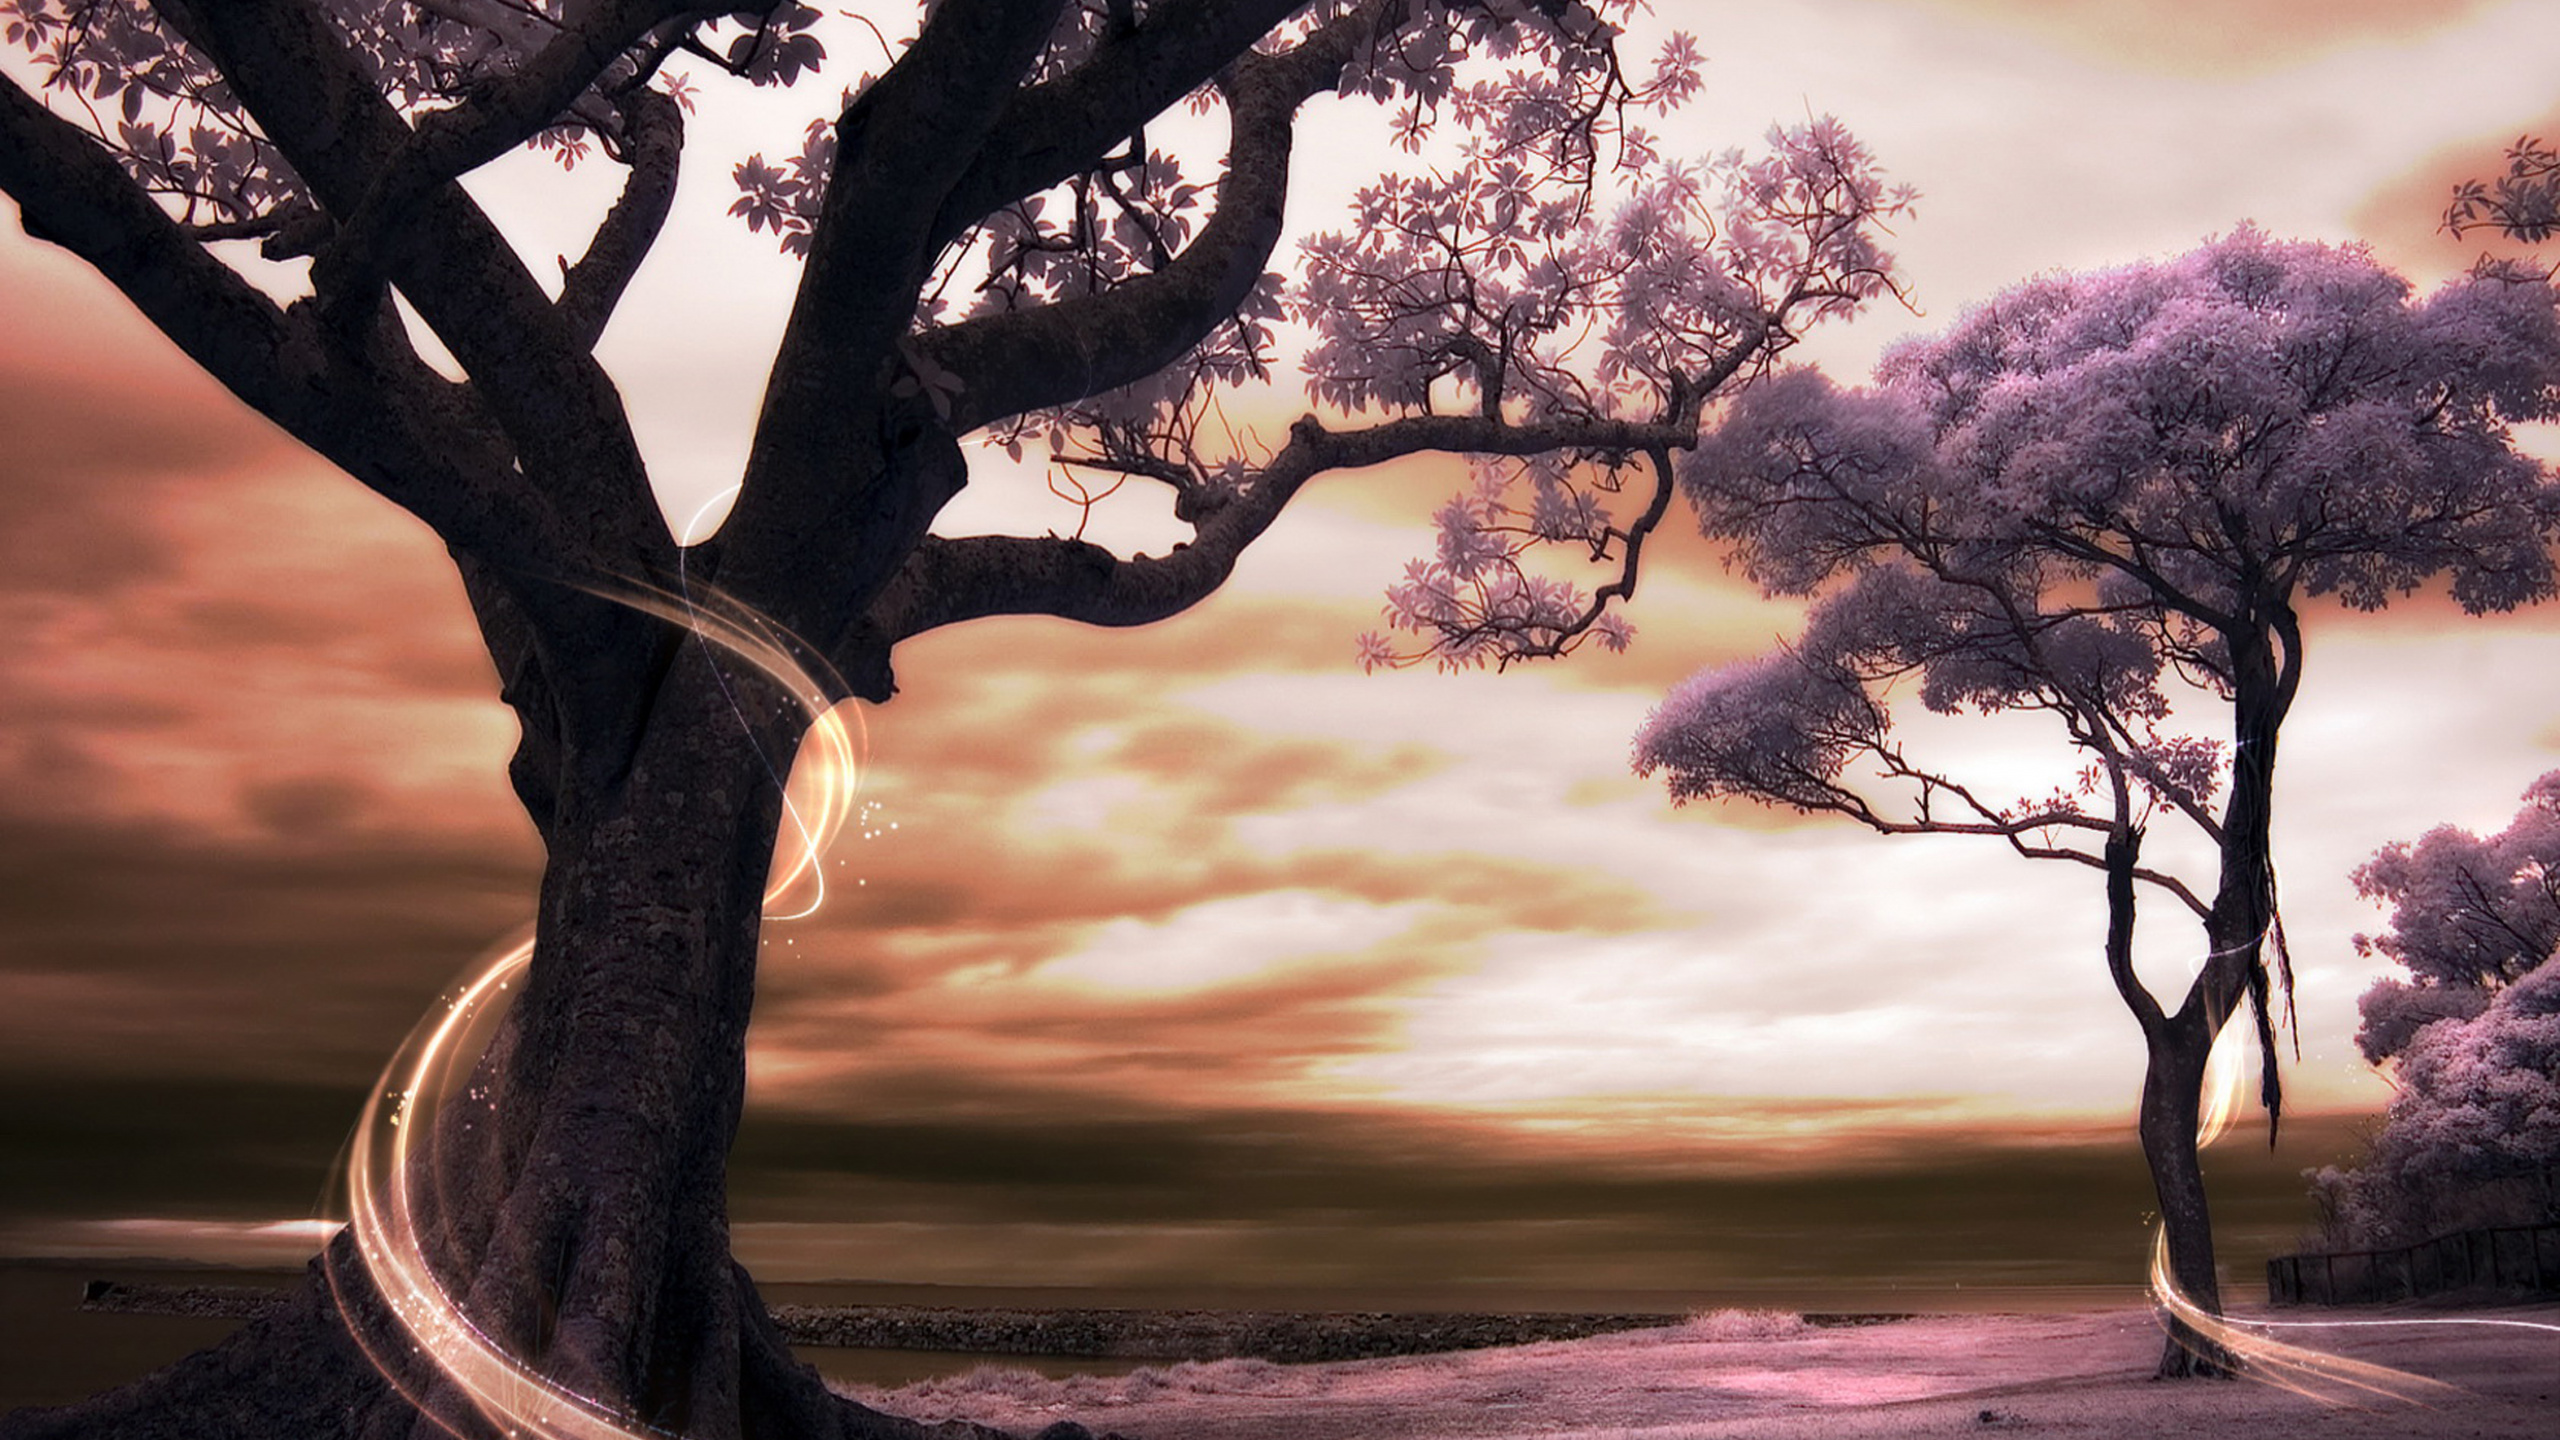 Schwarzer Baum Auf Grauem Sand Bei Sonnenuntergang. Wallpaper in 2560x1440 Resolution